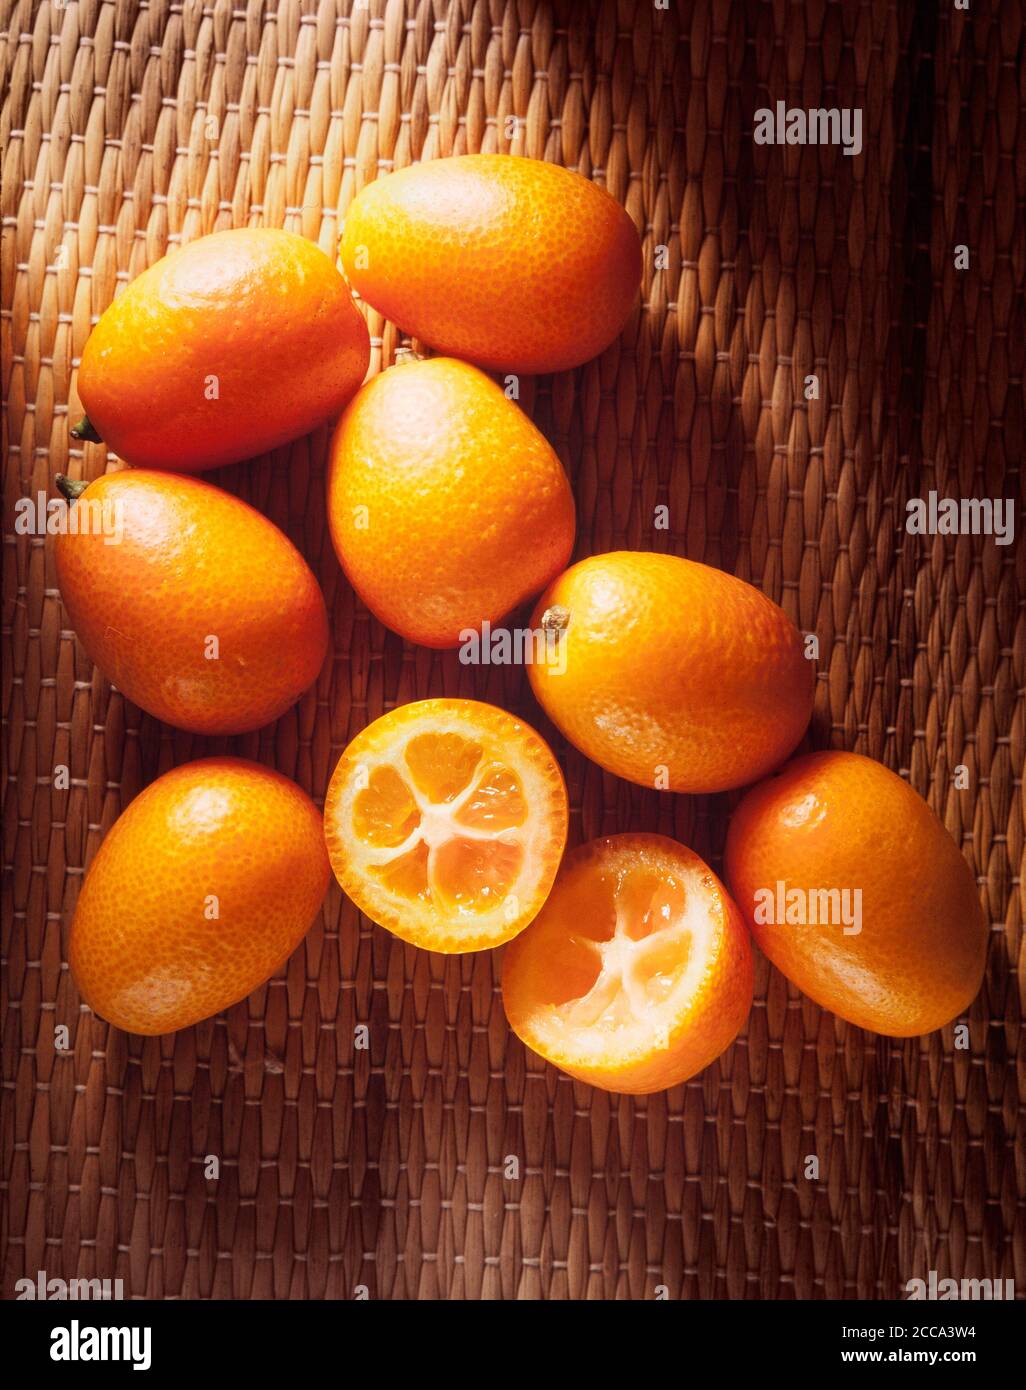 Kumquats or cumquats fruit, Citrus japonica Stock Photo